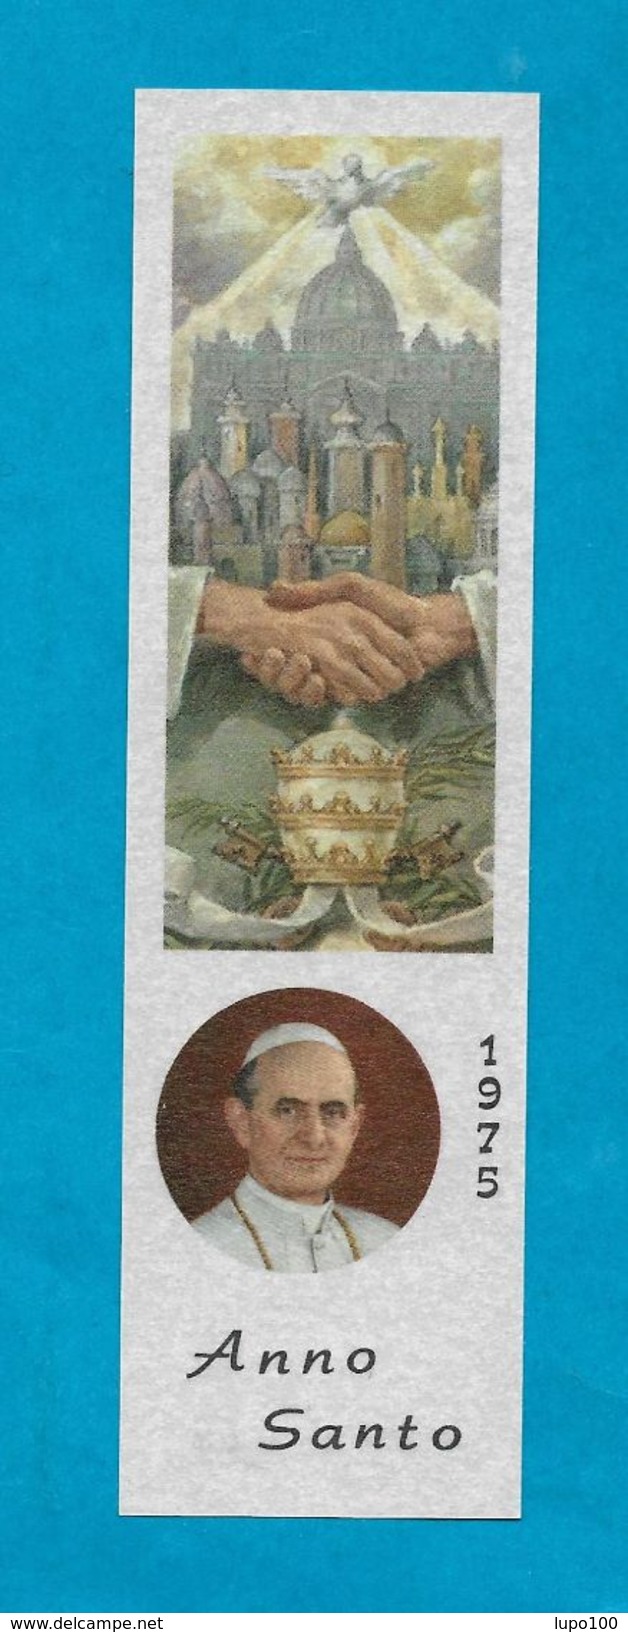 SEGNALIBRO SANTINO ANNO SANTO 1975 PAOLO VI - Bookmarks